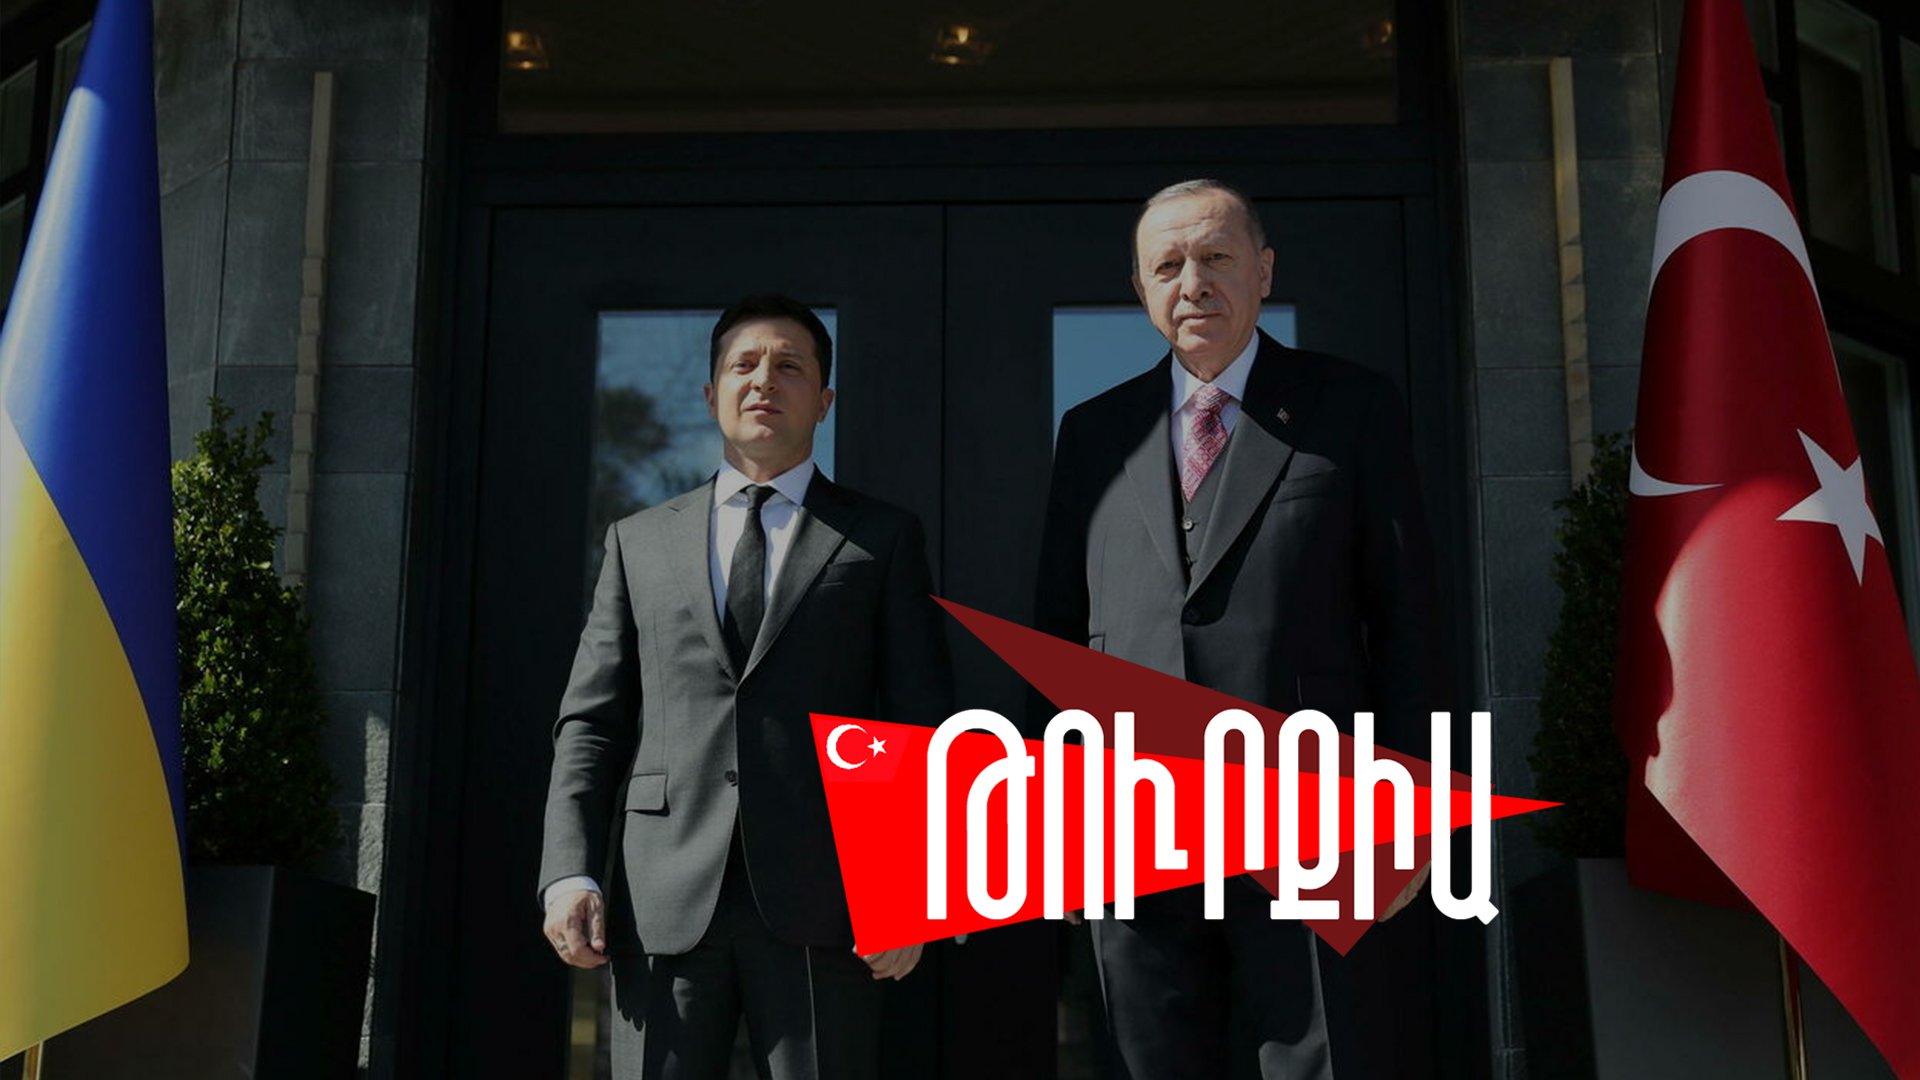 Թուրքիան աջակցում է Ուկրաինային, բայց նեղուցները չի փակում Ռուսաստանի համար